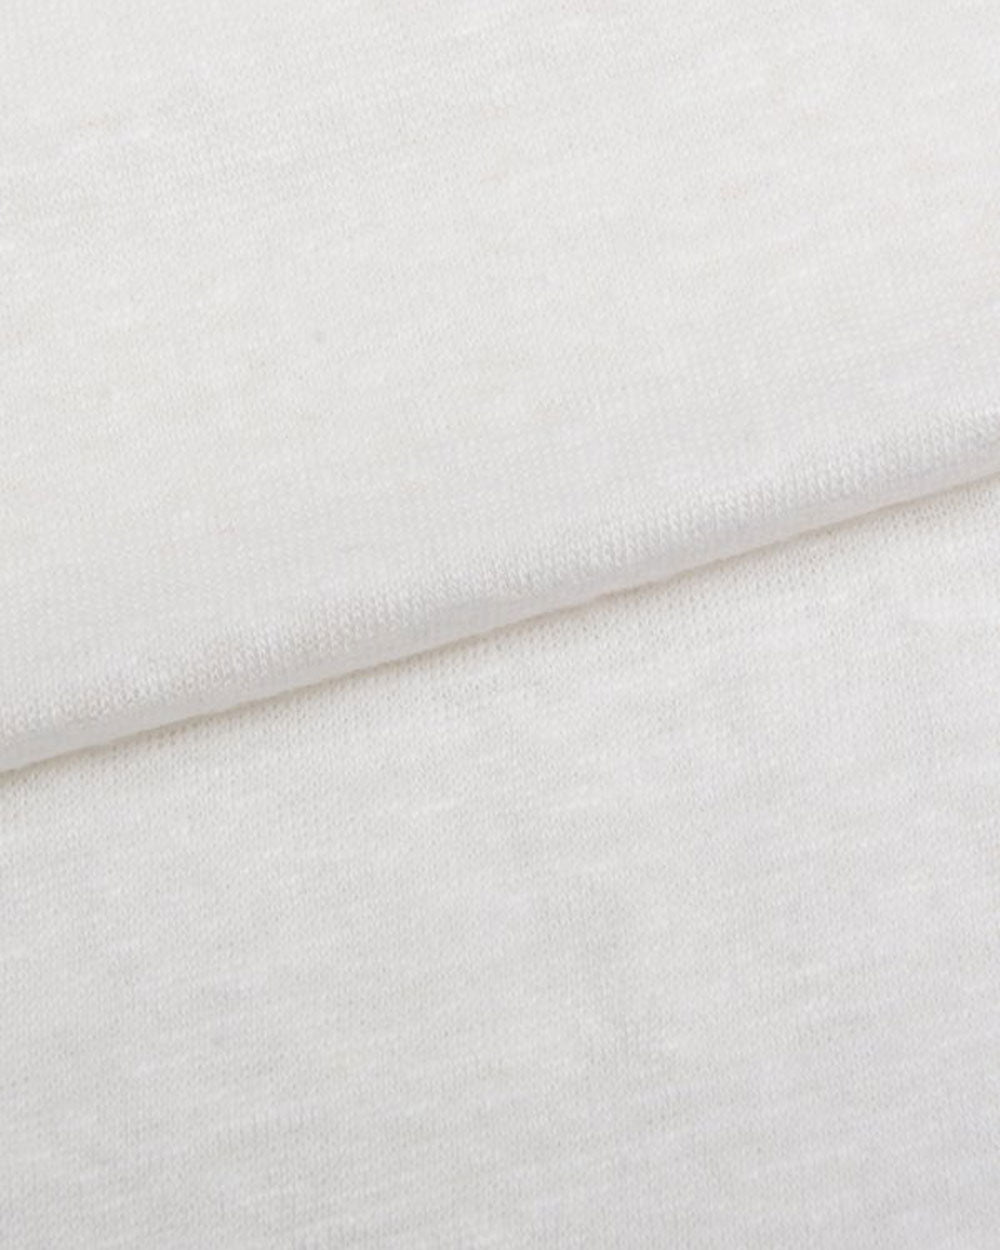 Jordan 1 Linen Short Sleeve T-Shirt in White